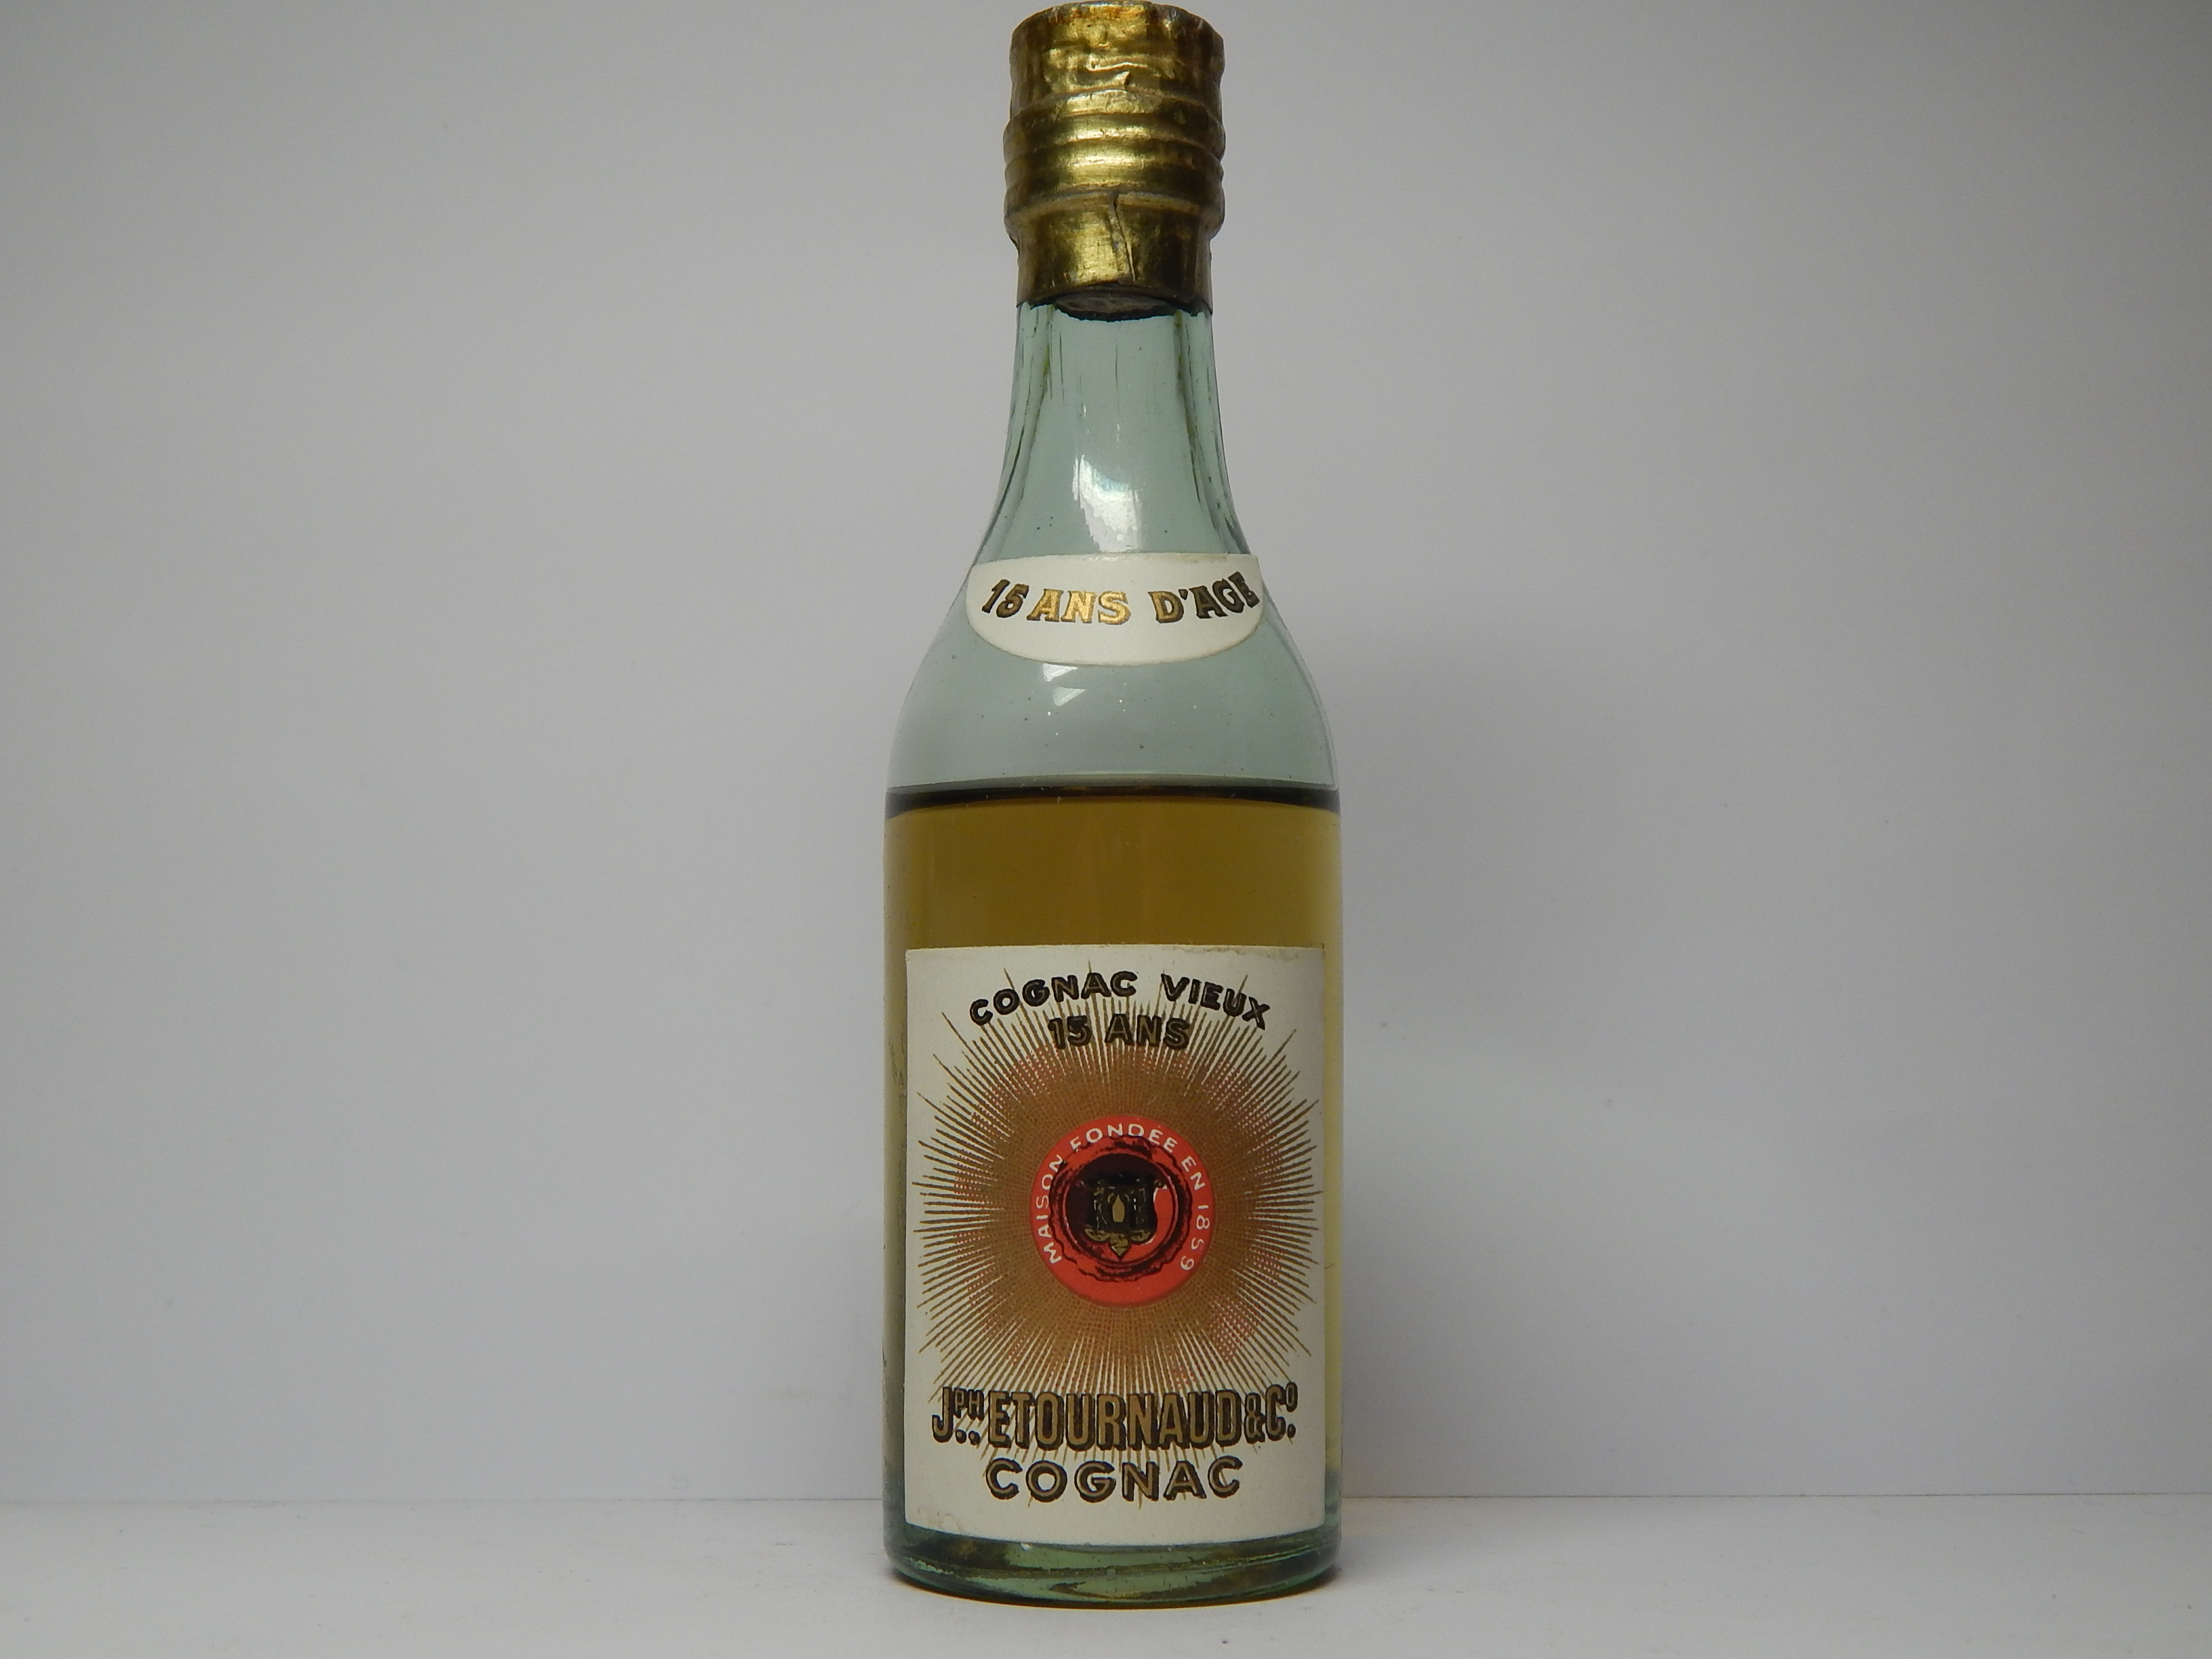 J.ETOURNAUD & Co. 15 ans d´age Vieux Cognac